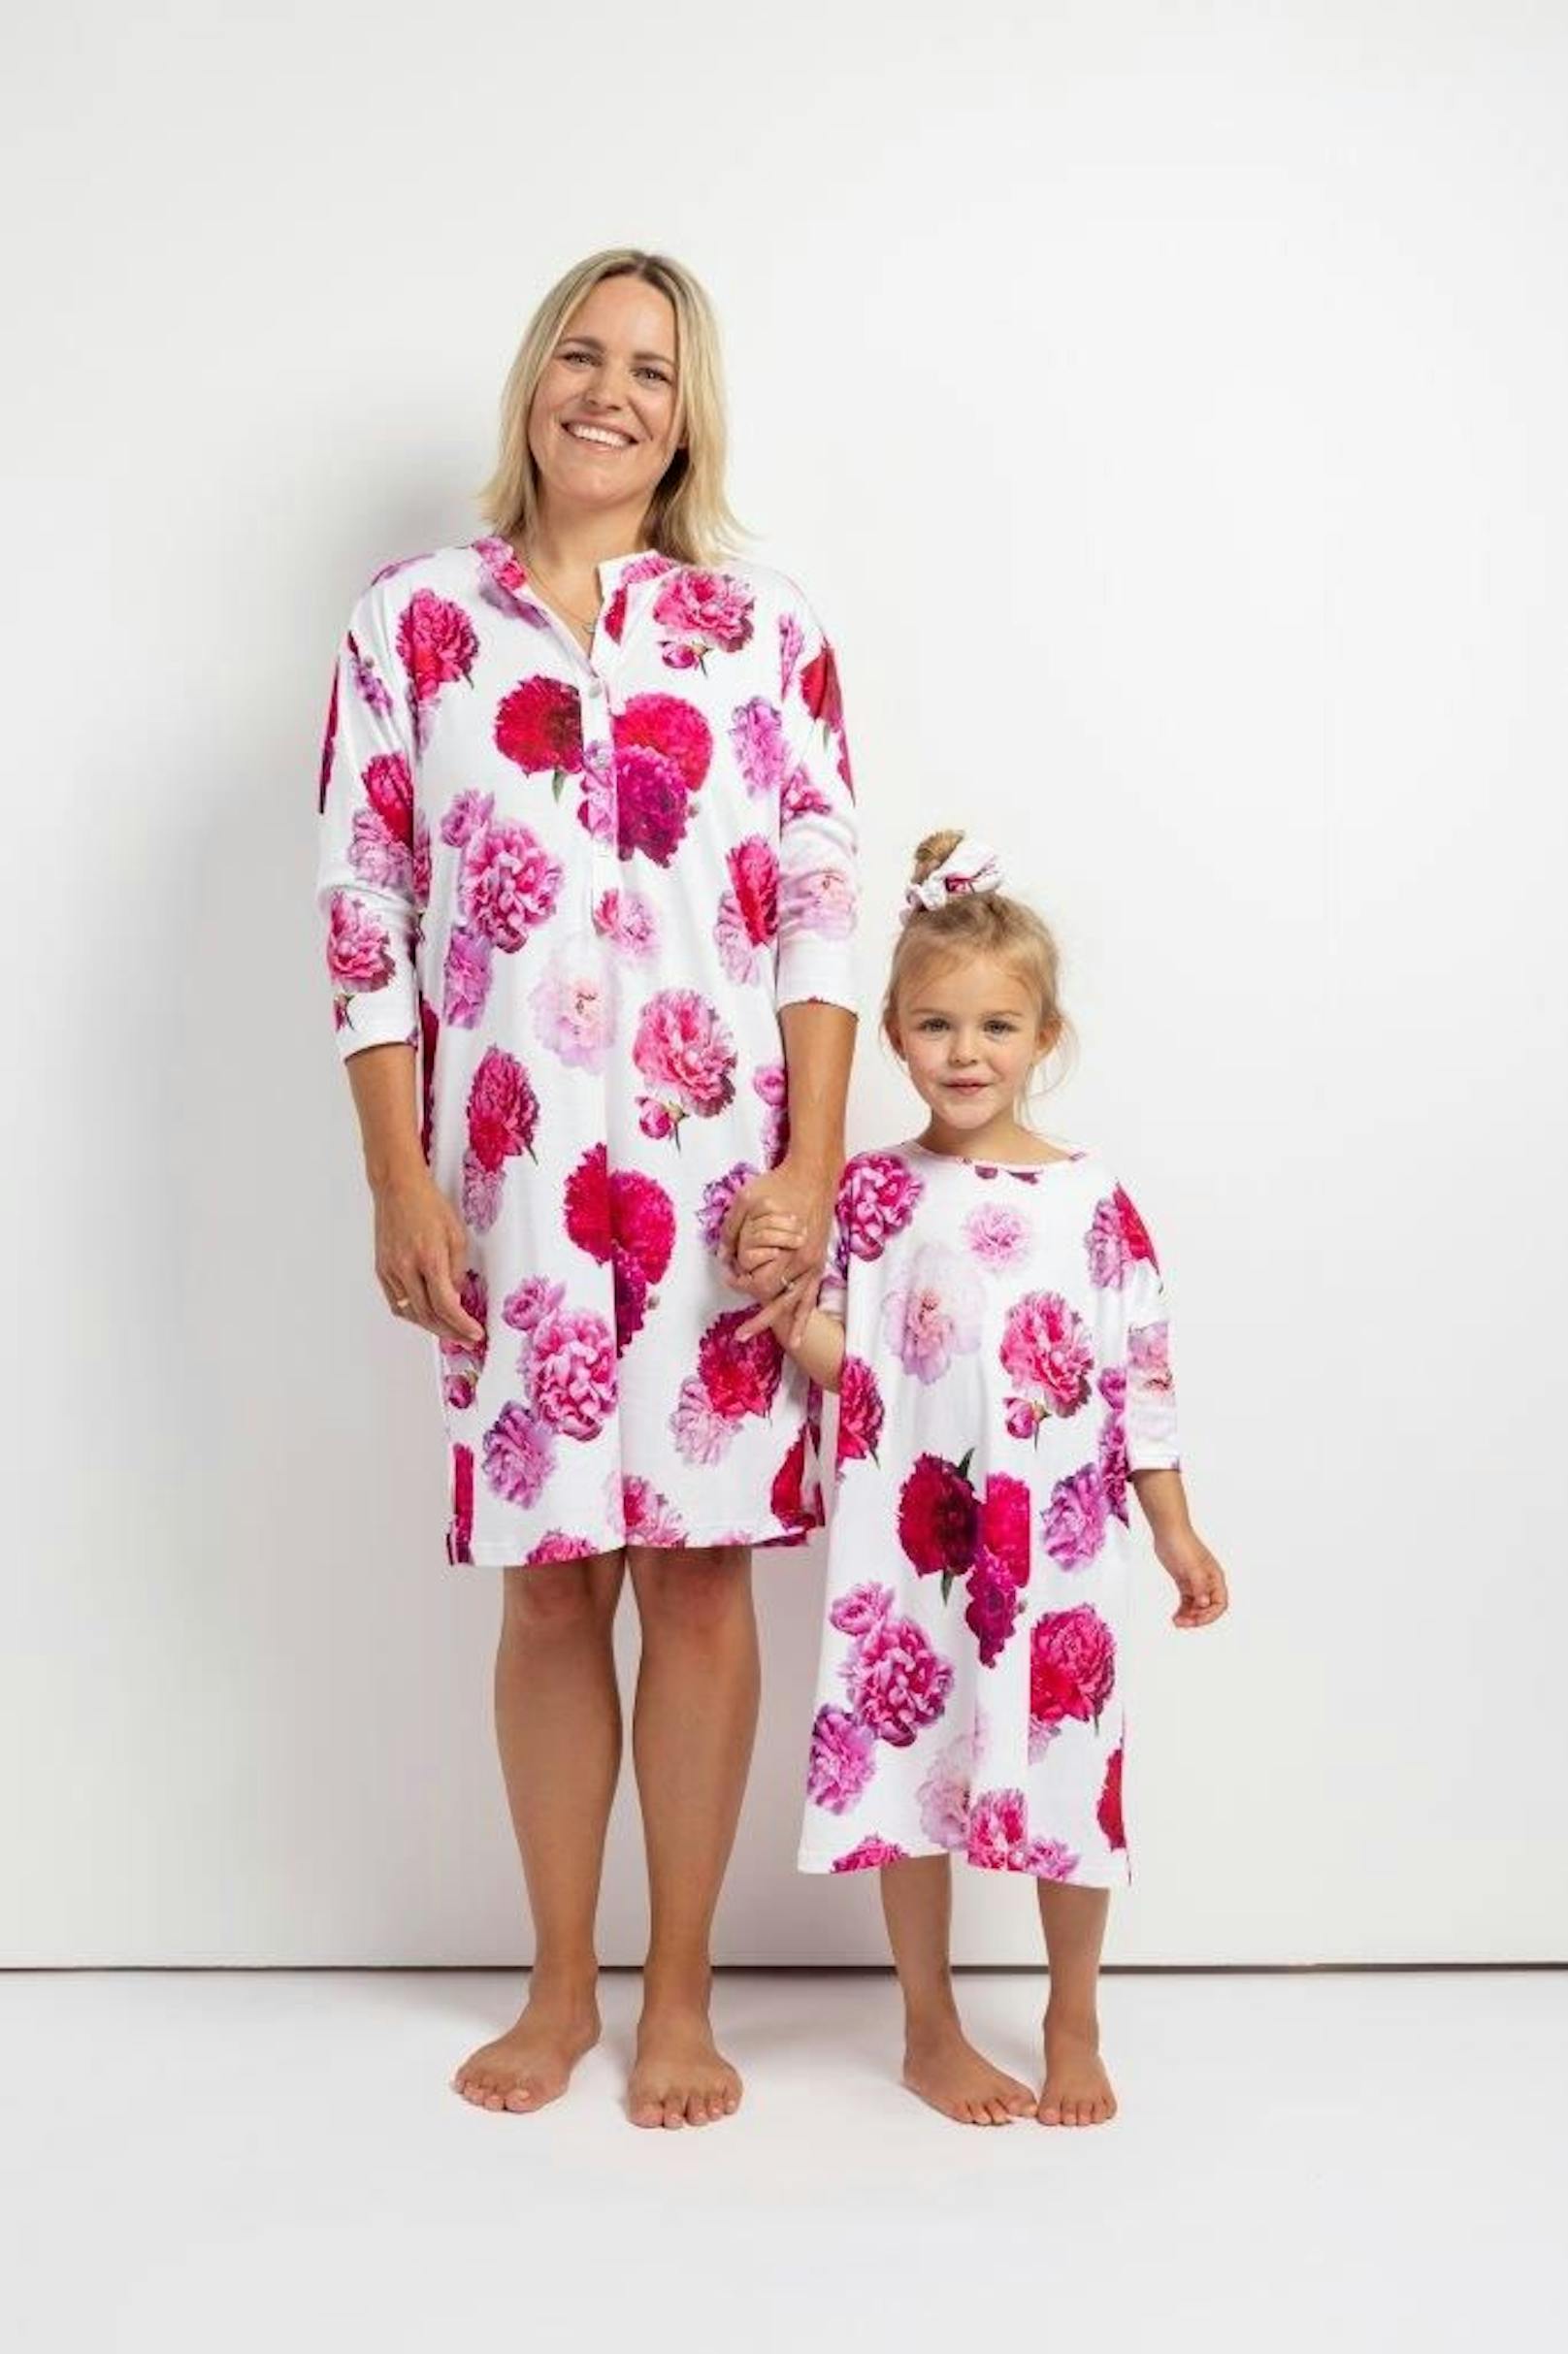 Wir lassen Mamas zu ihrem Ehrentag hochleben und betten Sie in ein Blütenmeer. Mit den blumigen Kissen, Kimonos, Kleider und zweiteiligen Pyjamas des österreichischen Sleep- und Homewear-Labels <strong>FLOWERS IN BED.&nbsp;</strong>Damen Nightdress "Golden Glow" um 149,00 Euro, Kinder Nachthemd "Pink Parfait" ab 59,00 Euro.